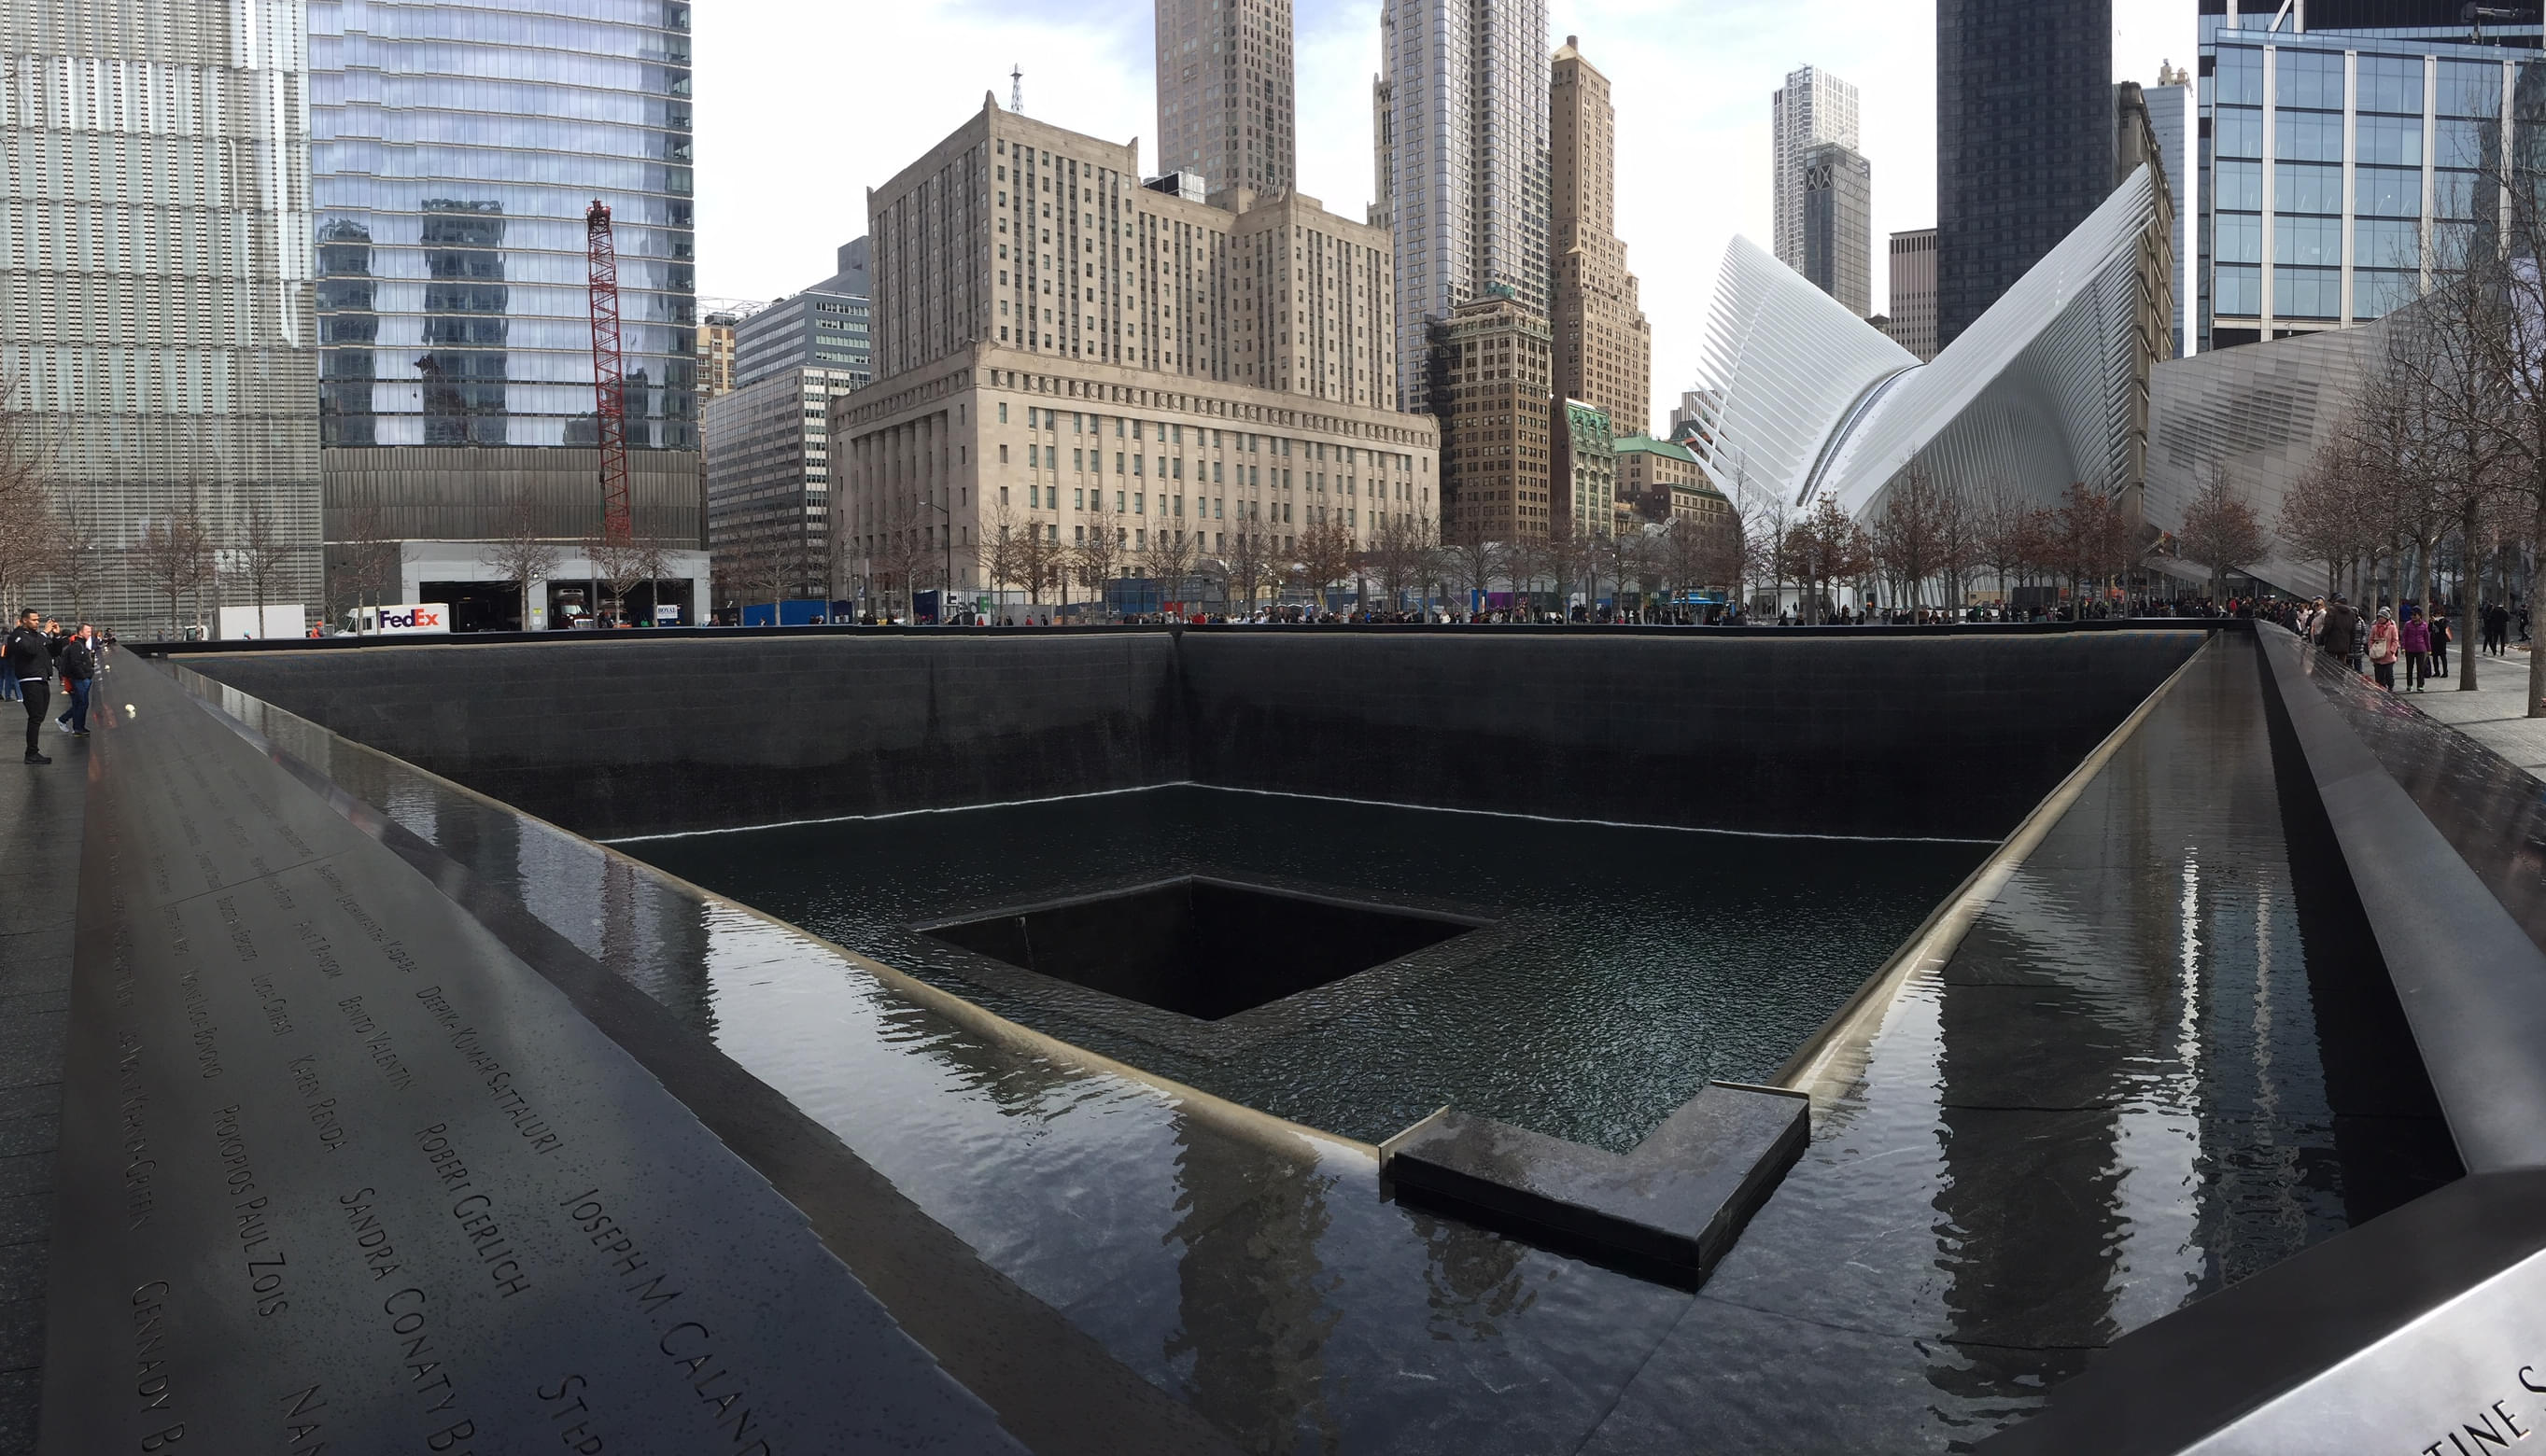 Ground Zero 9/11